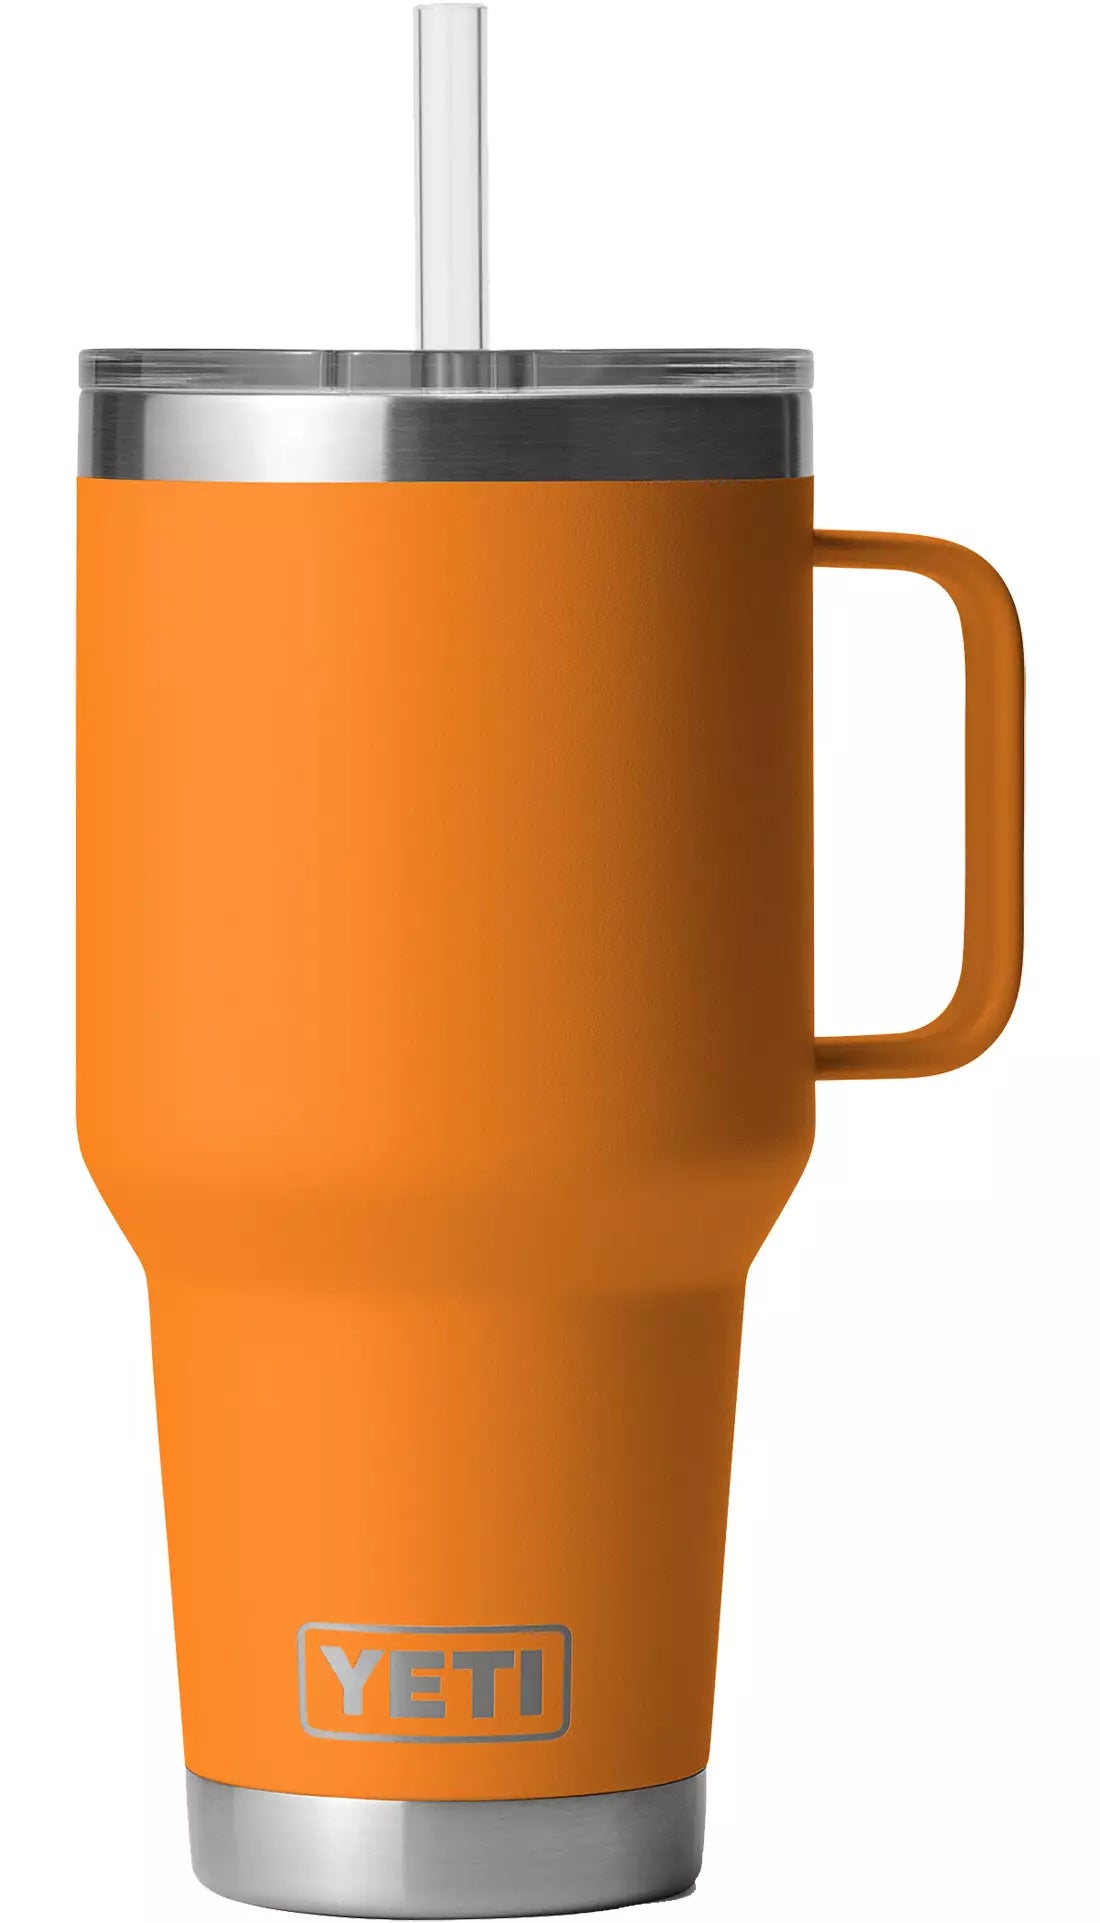 Yeti Rambler 35oz Mug with Straw Lid - King Crab Orange